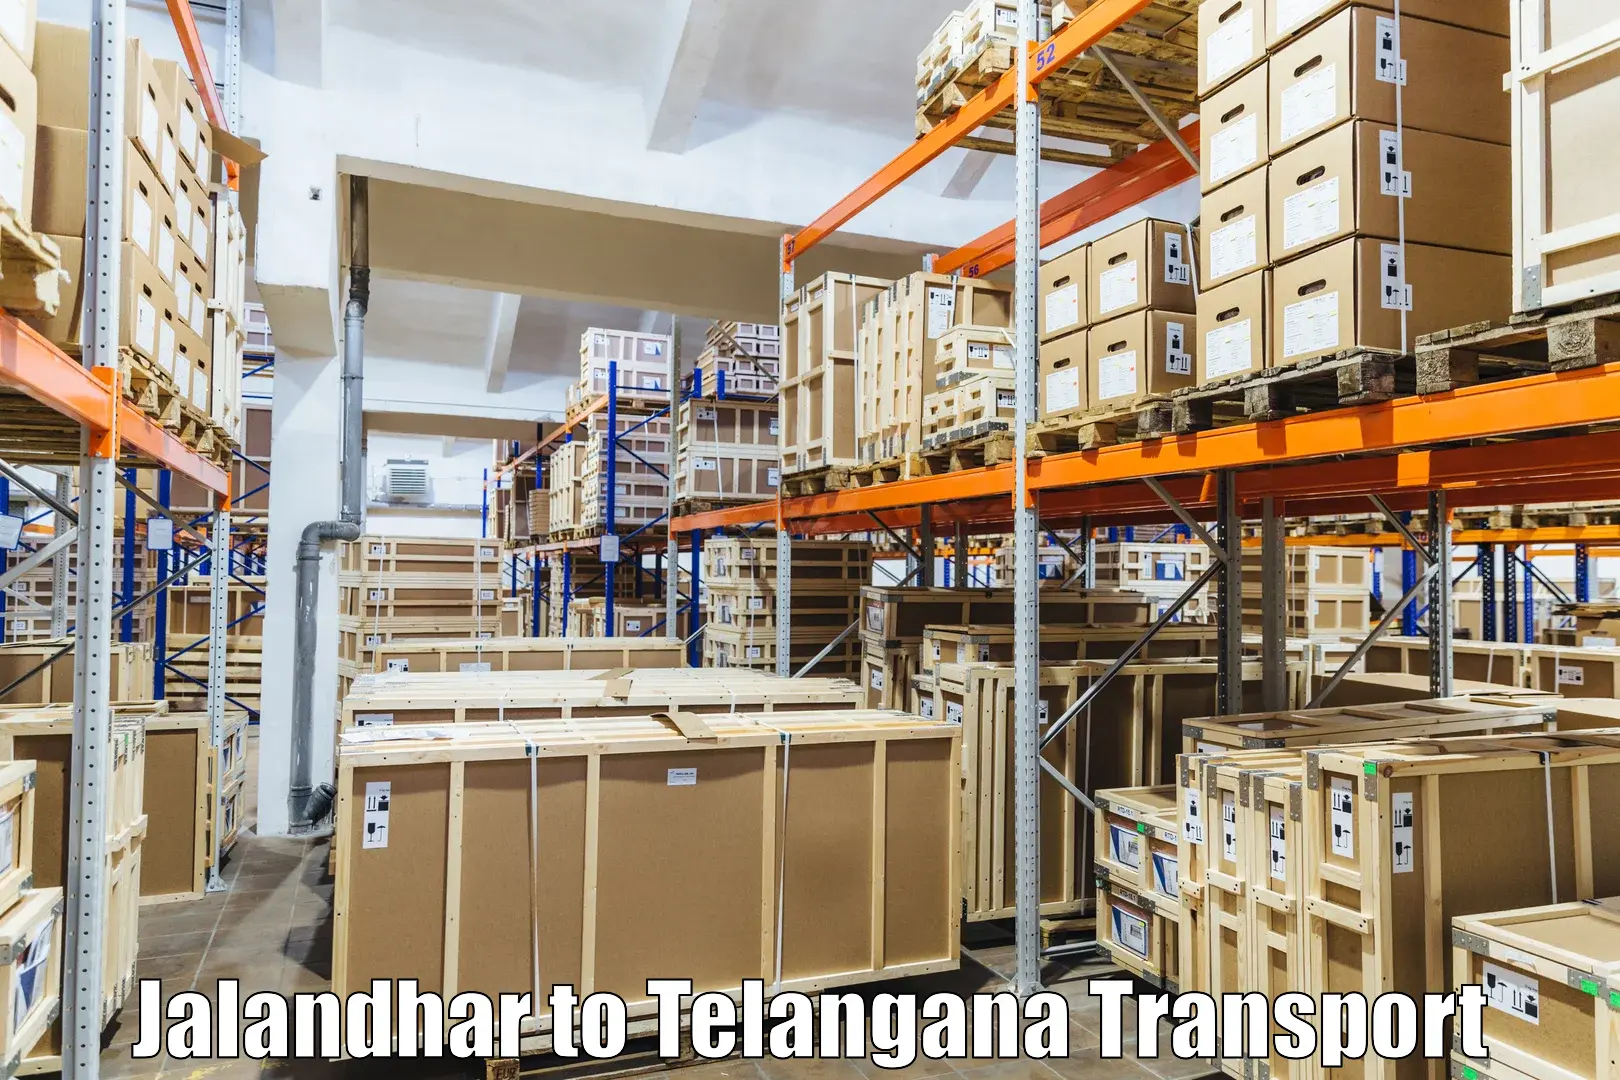 Land transport services Jalandhar to Sultanabad